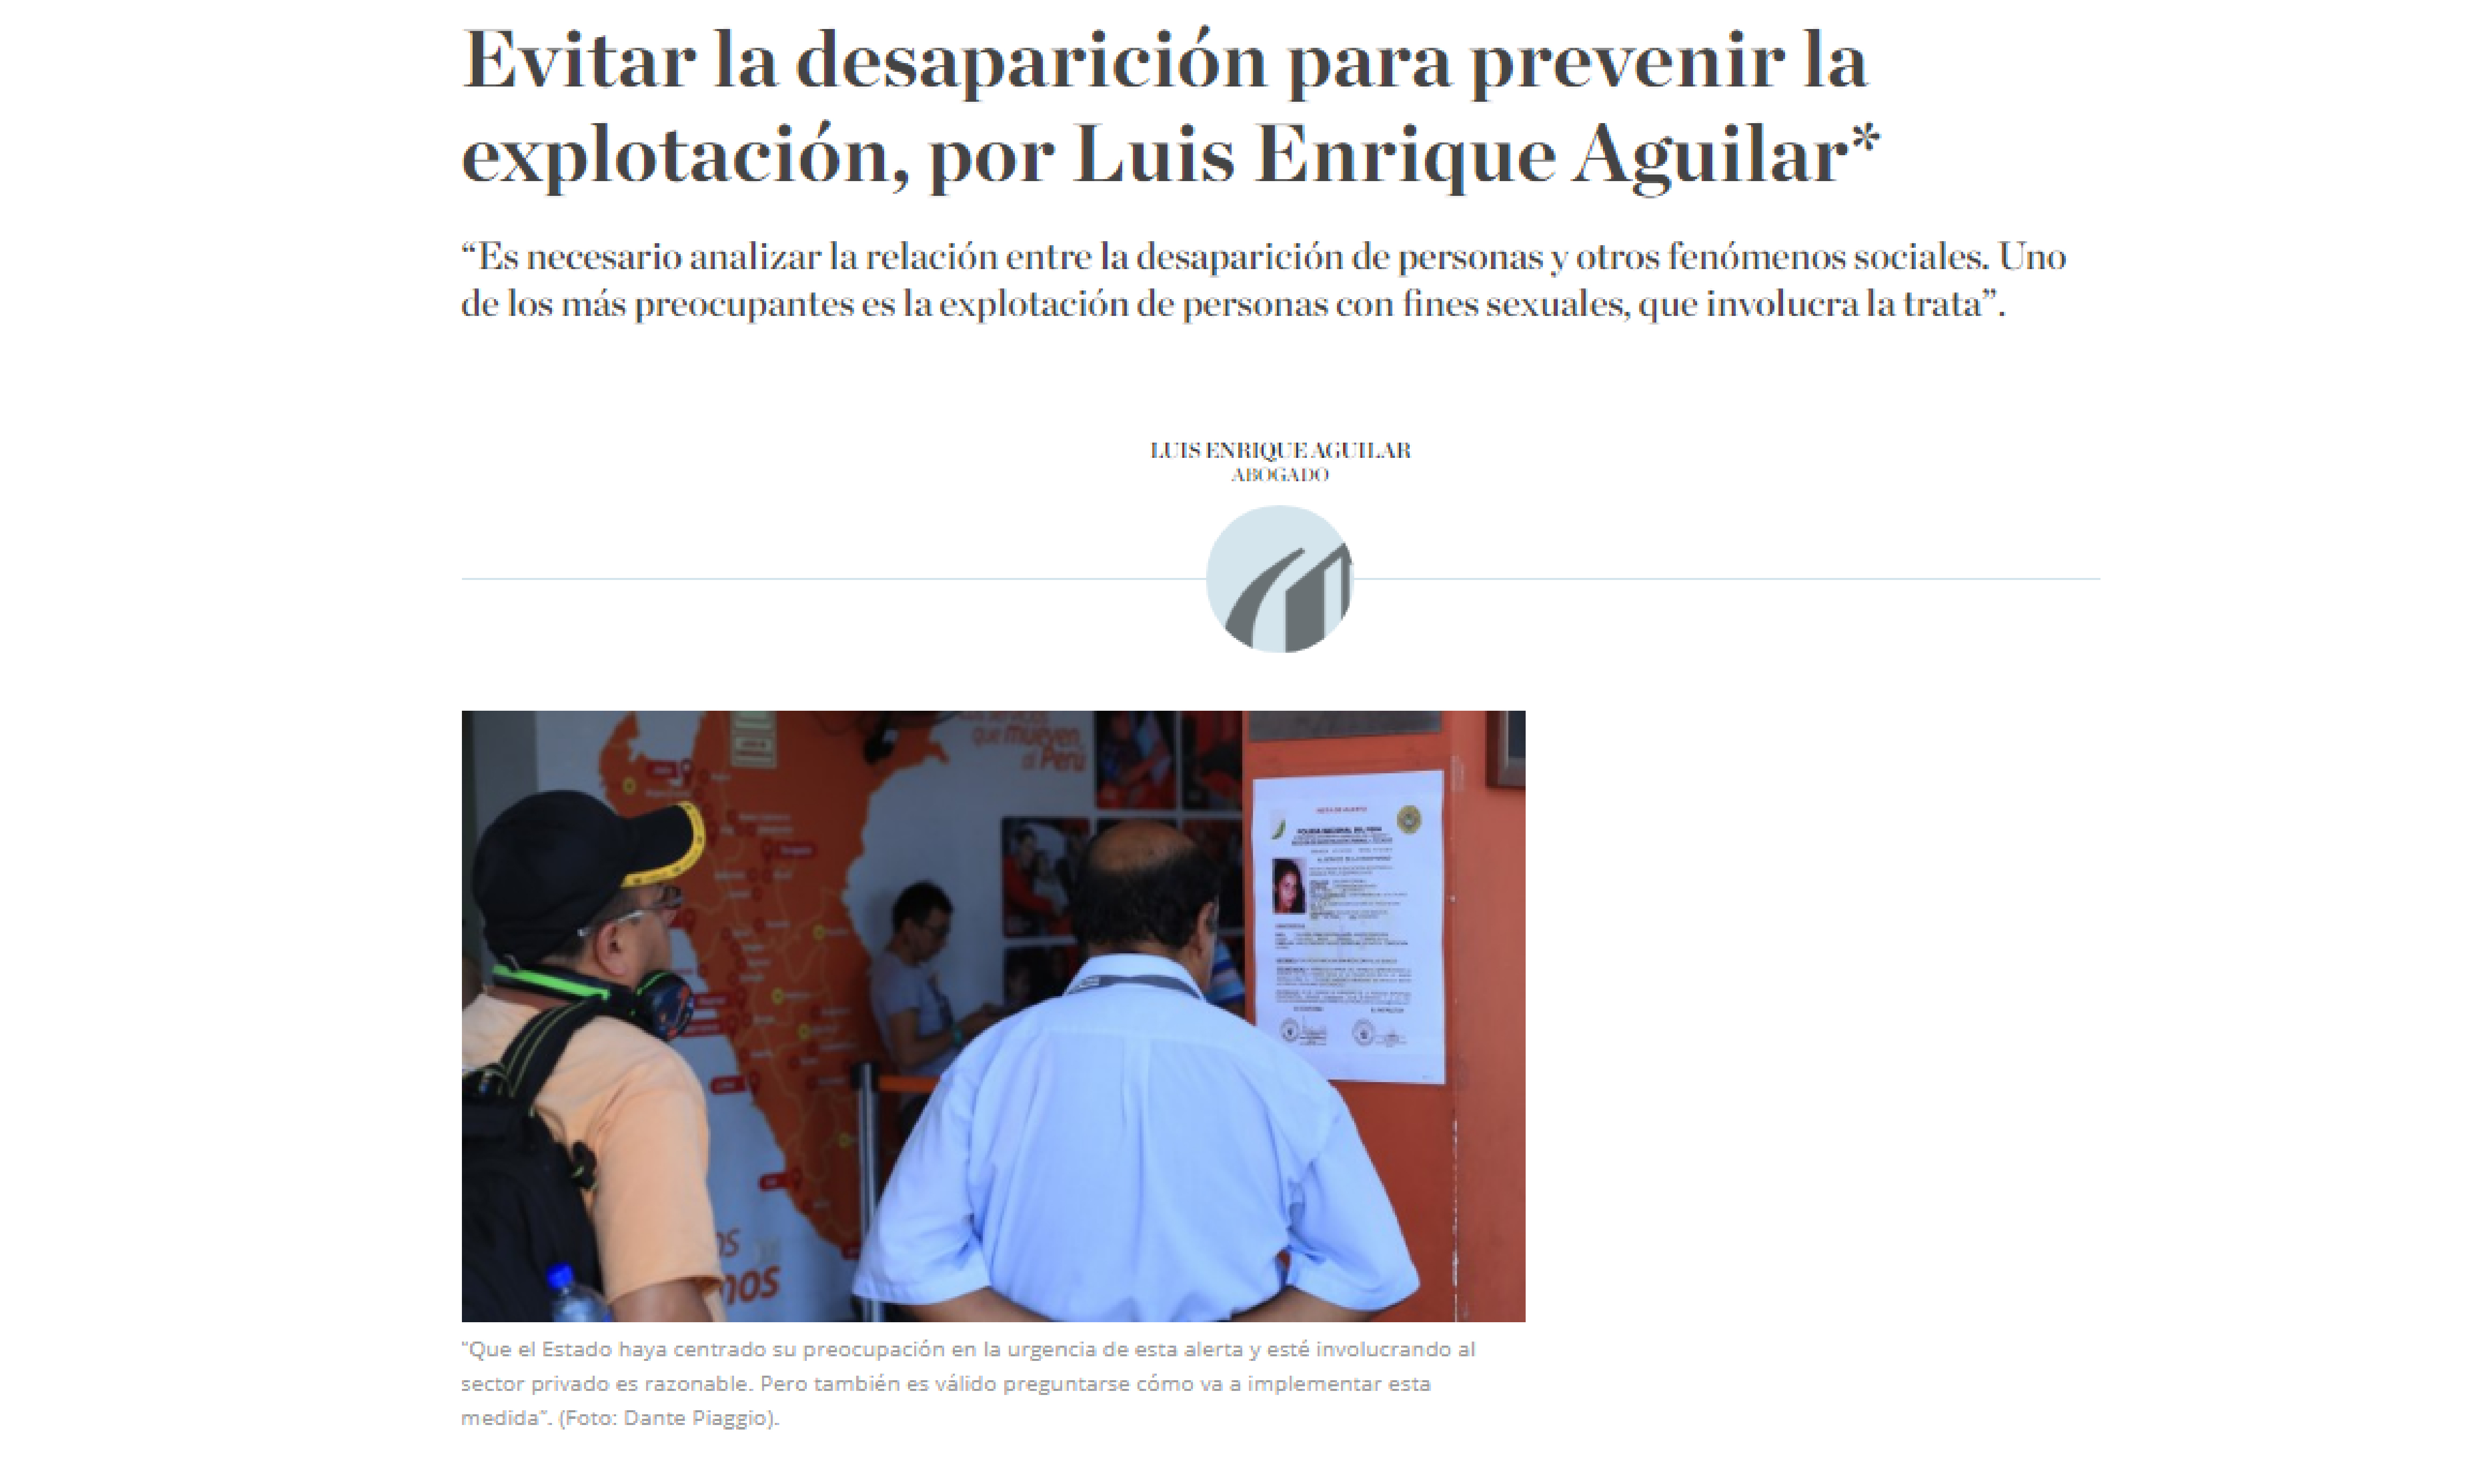 El Comercio: Evitar la desaparición para prevenir la explotación, por Luis Enrique Aguilar